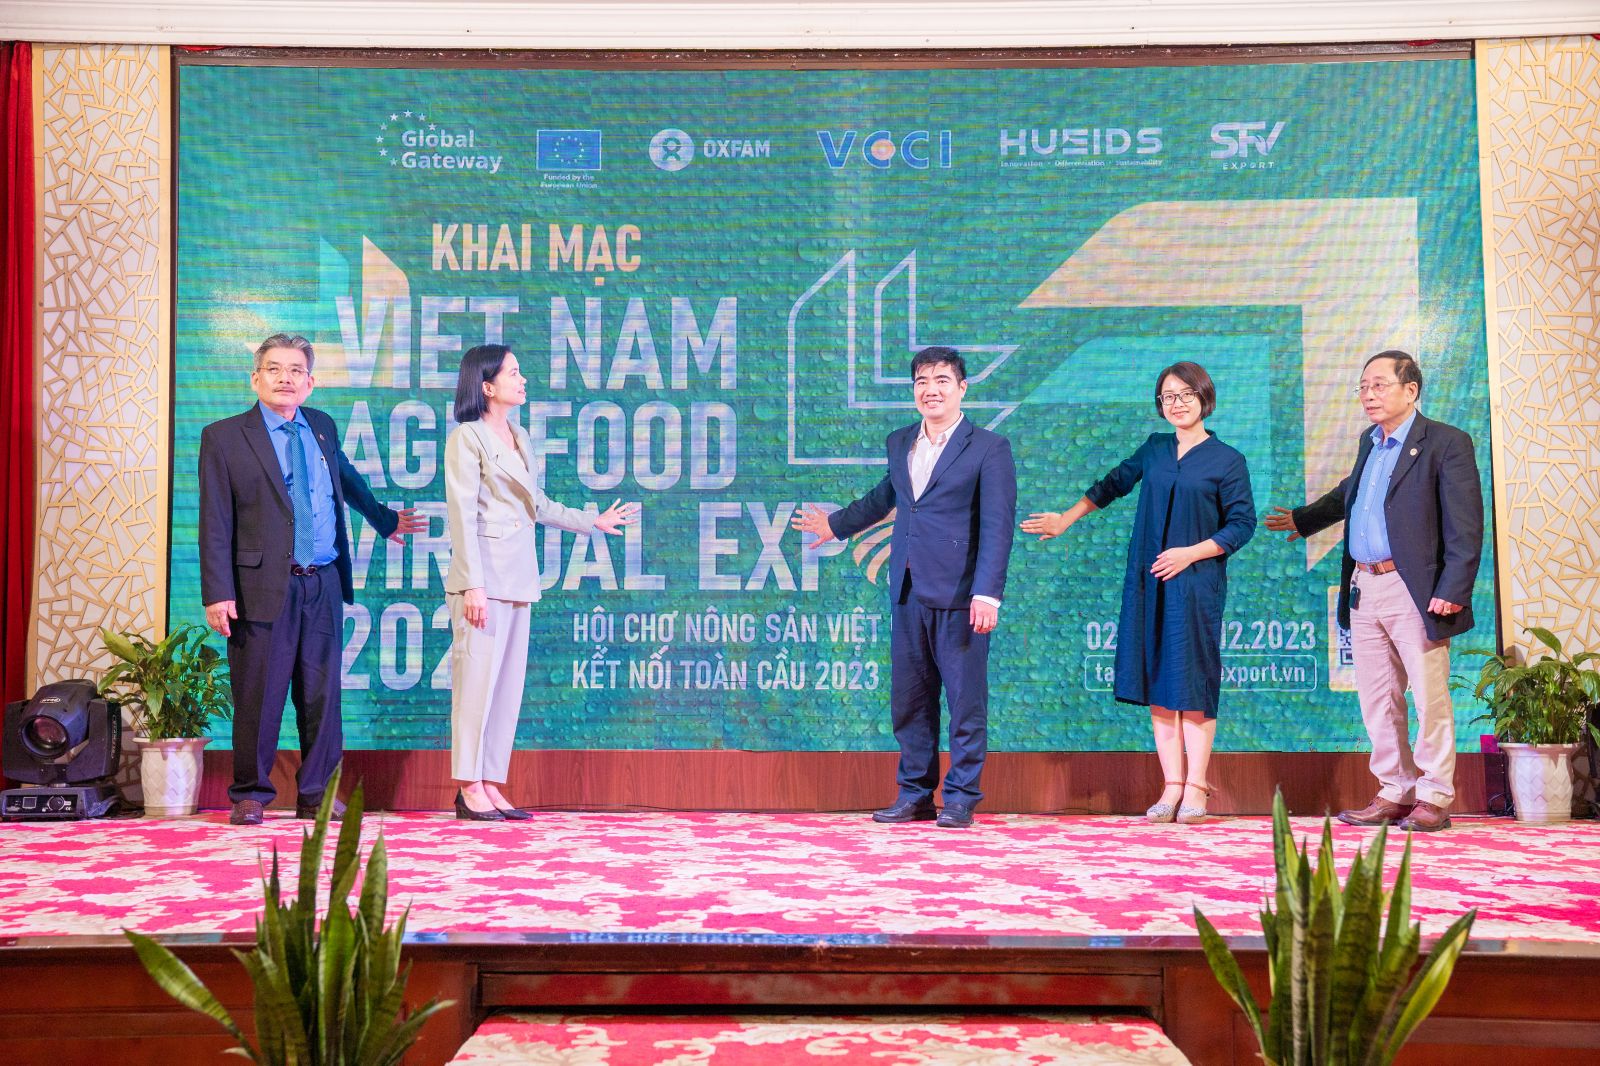 Vietnam Agrifood Virtual Expo 2023 là hội chợ ảo trên nền tảng trực tuyến chính thức được khai mạc tại TP. Thừa Thiên Huế.